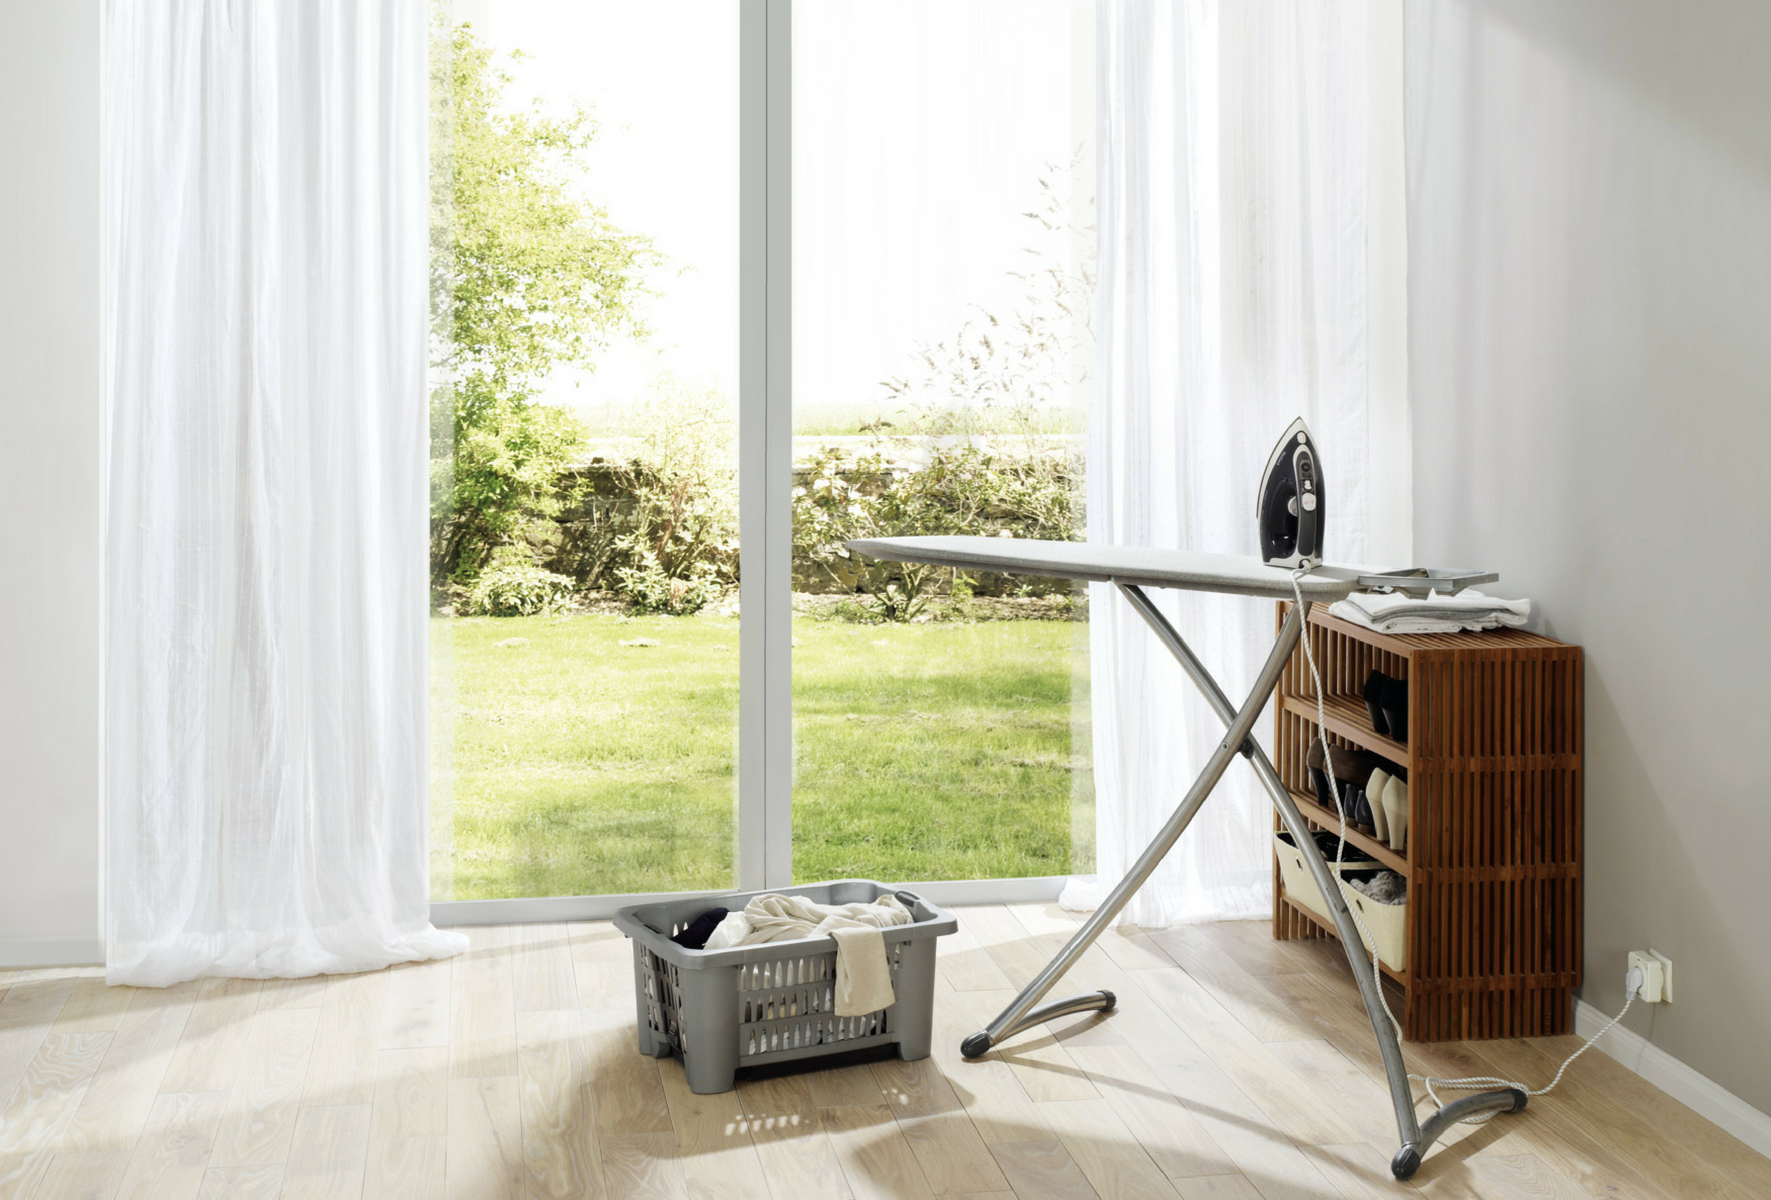 Утюг, управляемый системой Smart Home с помощью приемника в розетке Hörmann